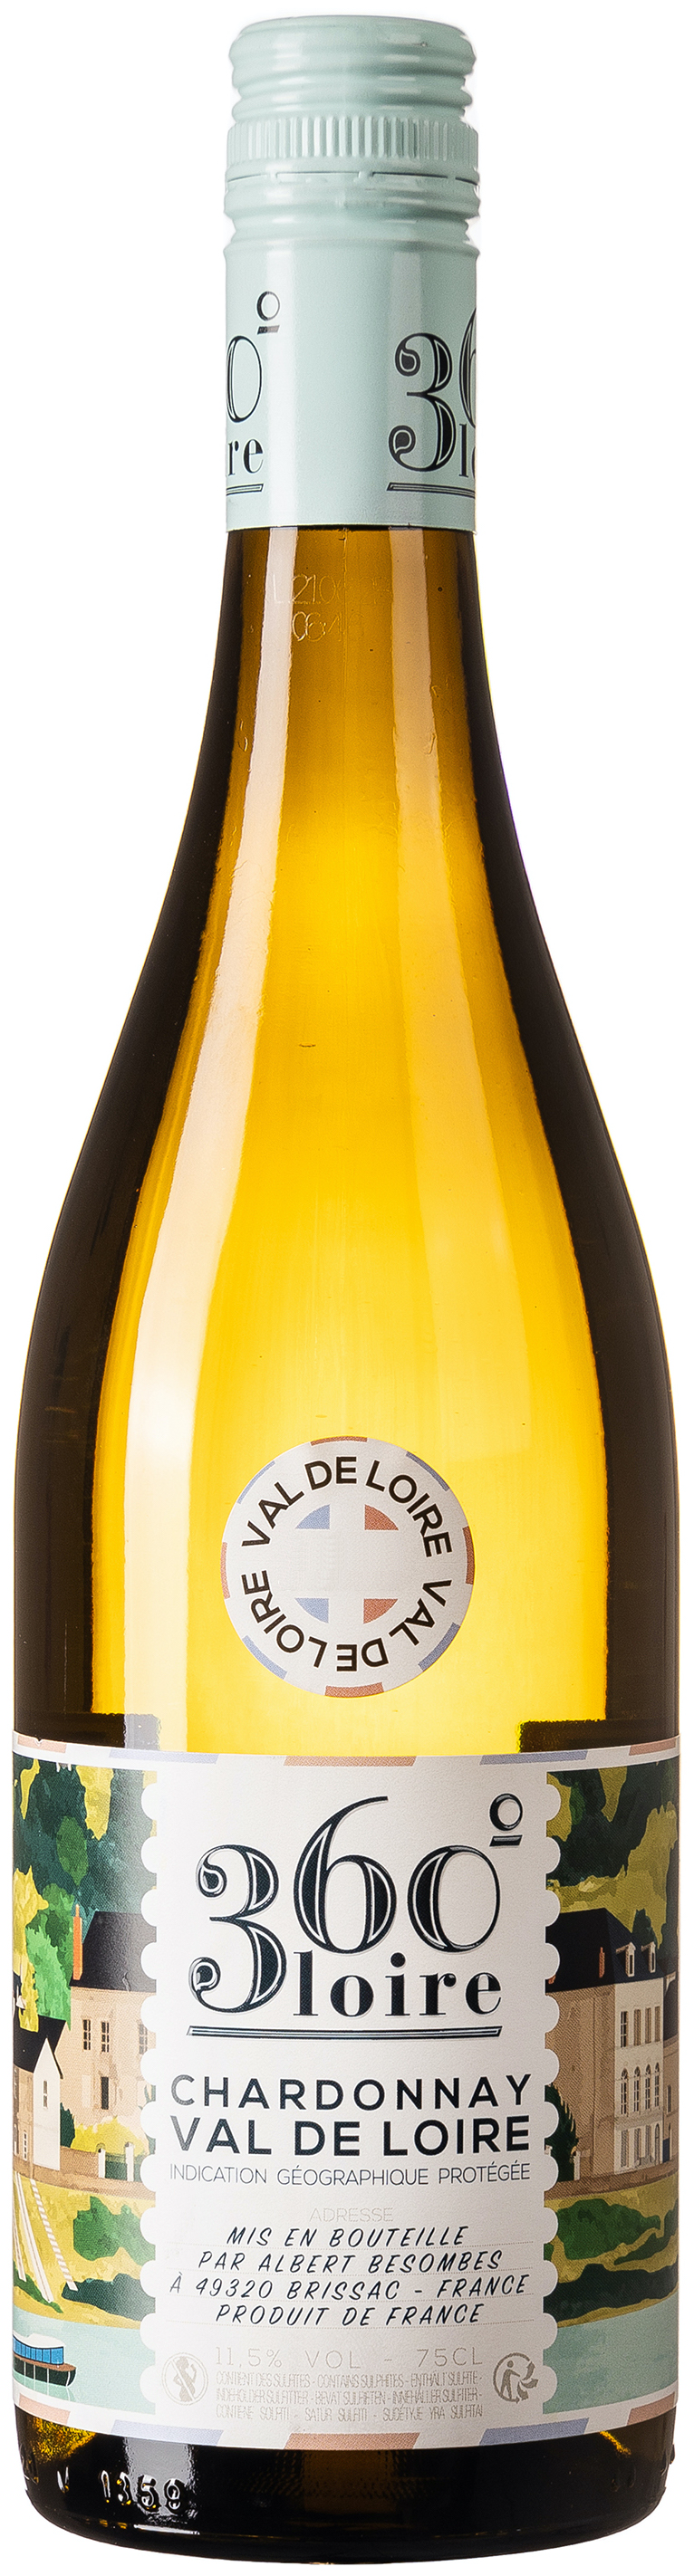 360˚ Loire Chardonnay Val de Loire IGP 11,5% vol. 0,75L